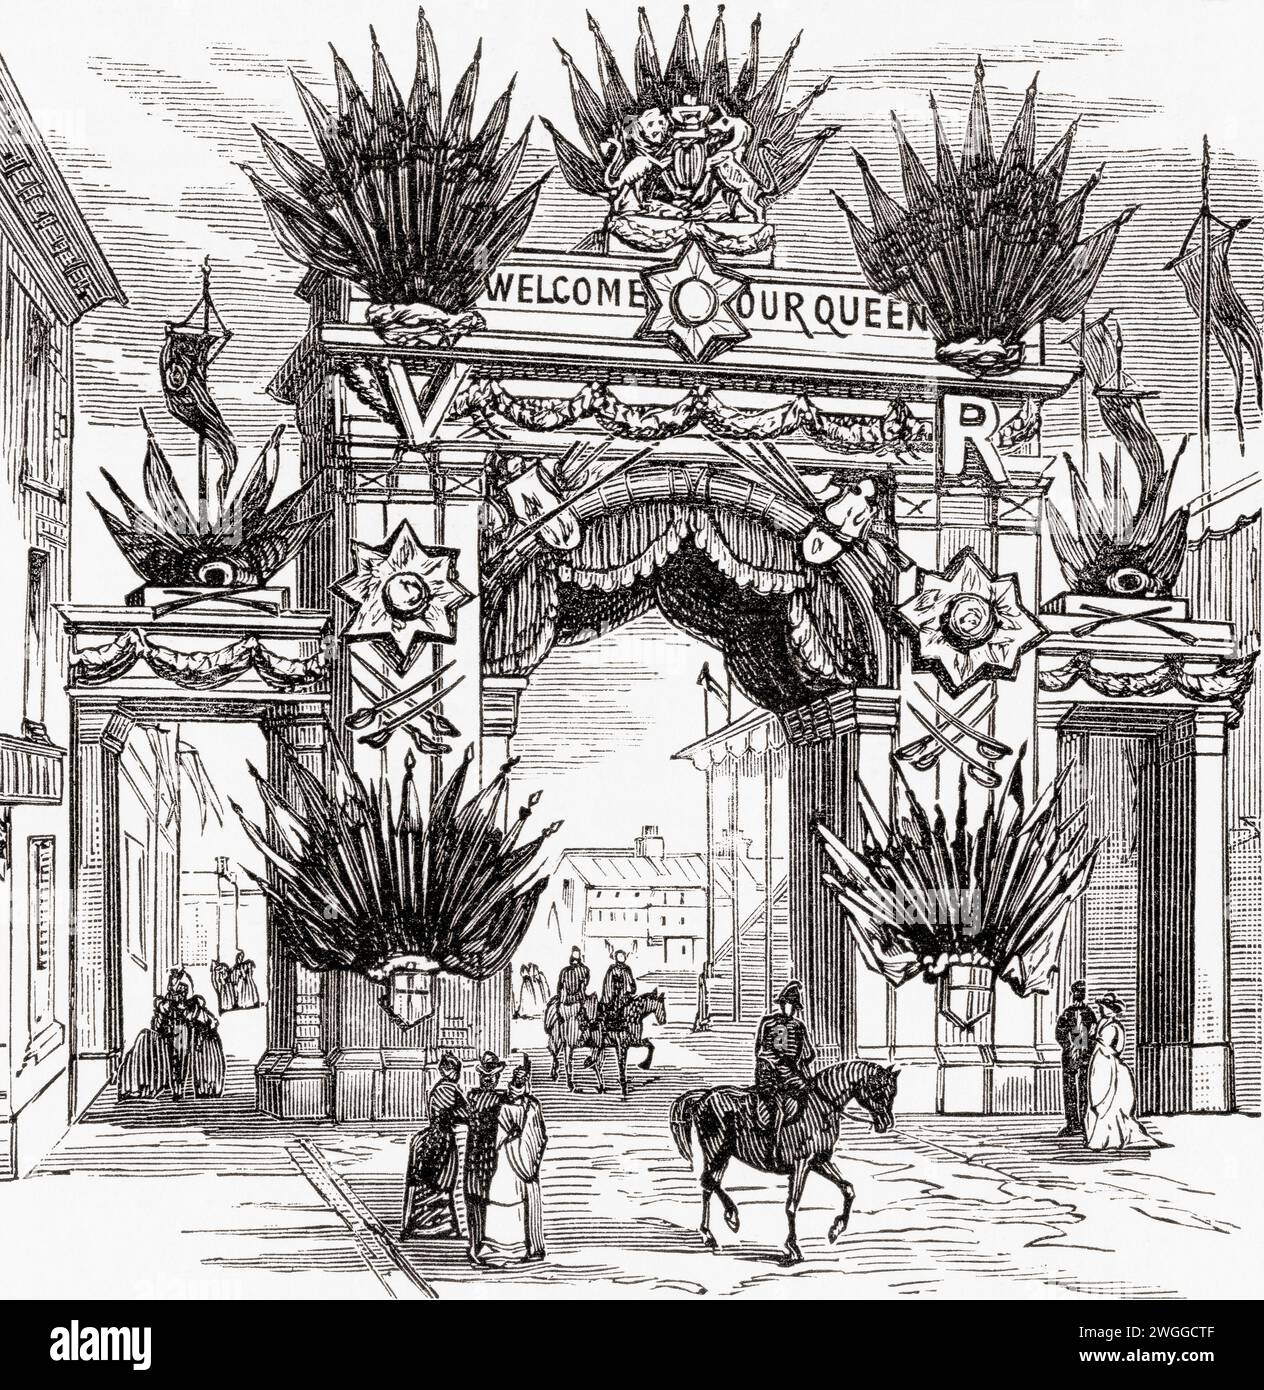 Il Gunmaker's Arch, Costa Green, Birmingham, Inghilterra, eretto per celebrare la visita della regina Vittoria a Birmingham il 23 marzo 1887, anno del Giubileo d'oro. Dal London Illustrated News, pubblicato il 26 marzo 1887. Foto Stock